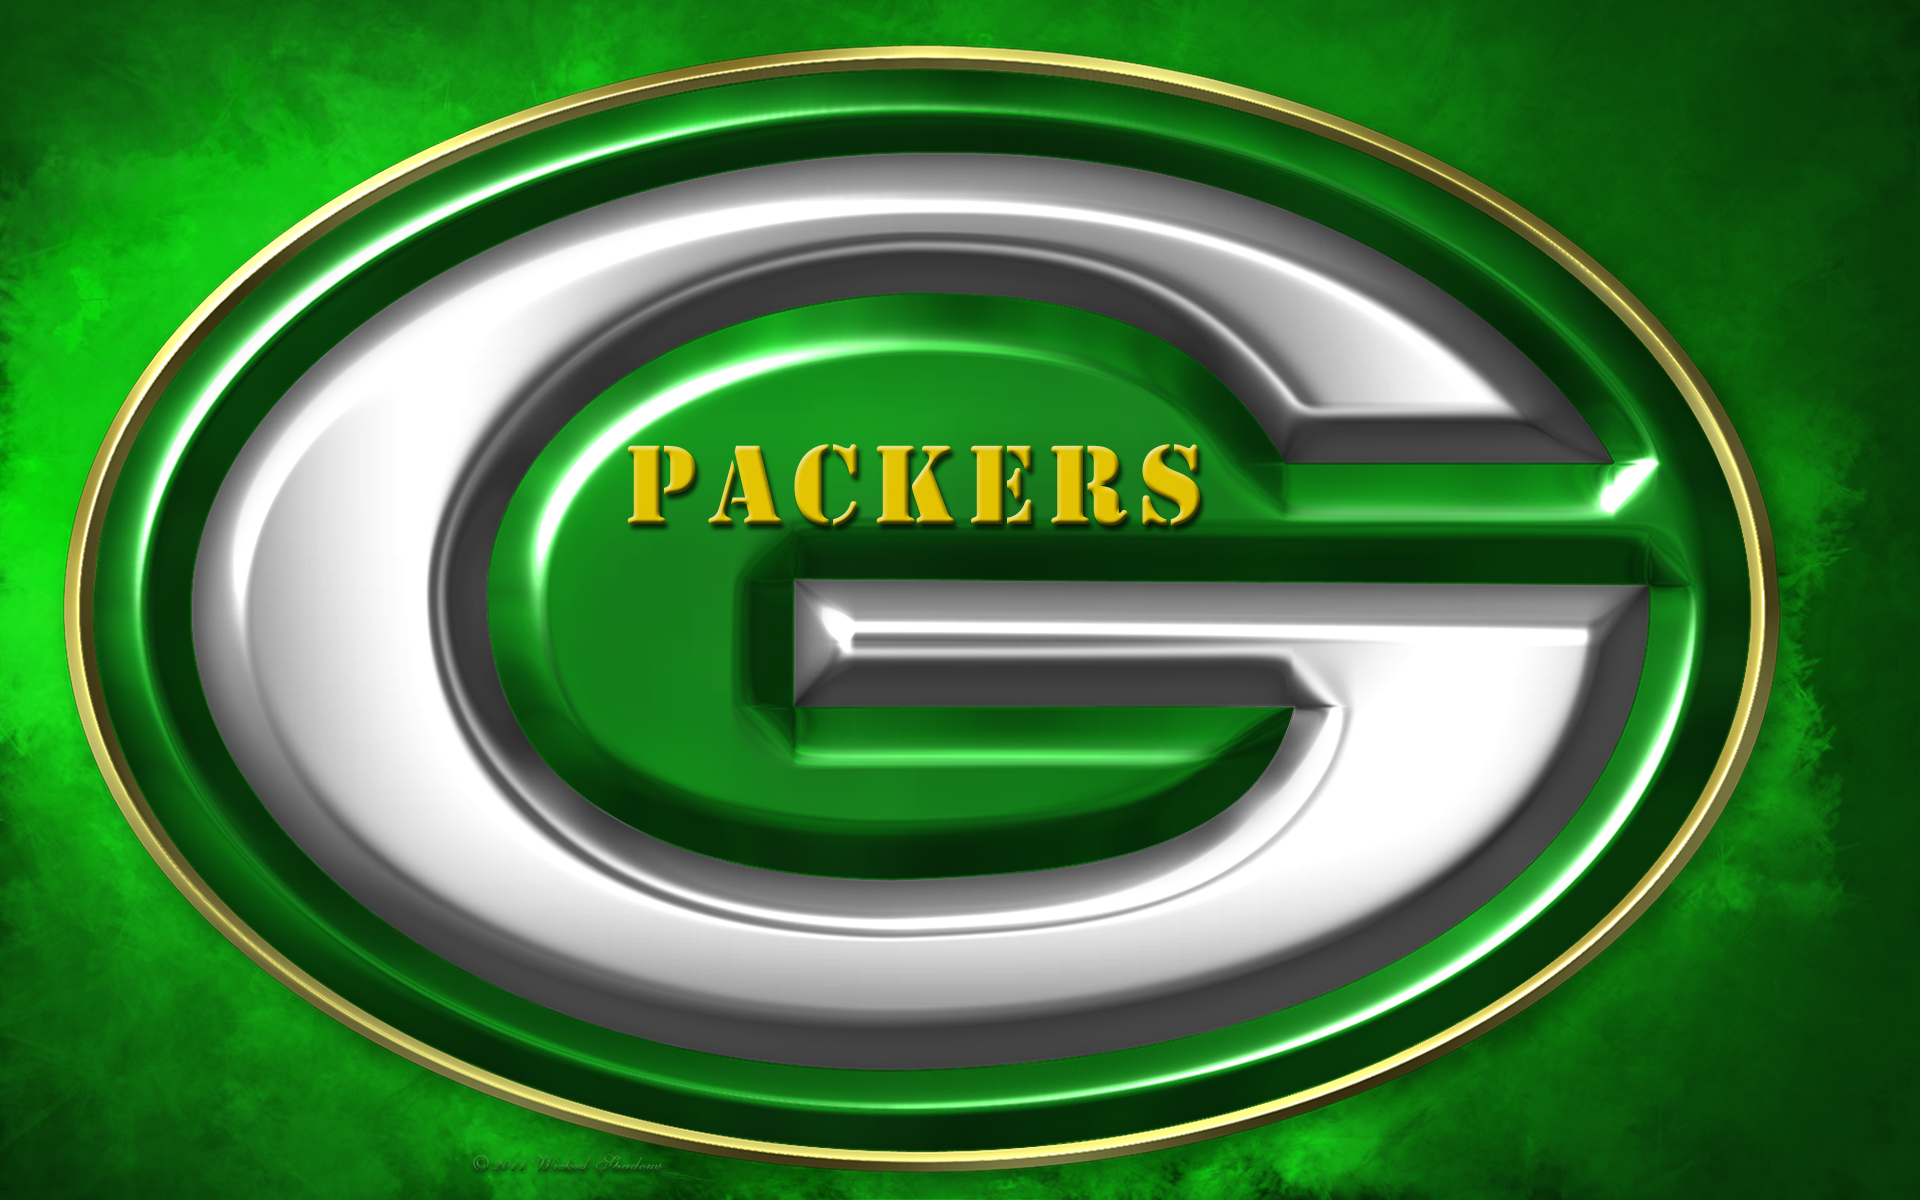 Green Bay Packers Images Wallpaper Logo - WallpaperSafari